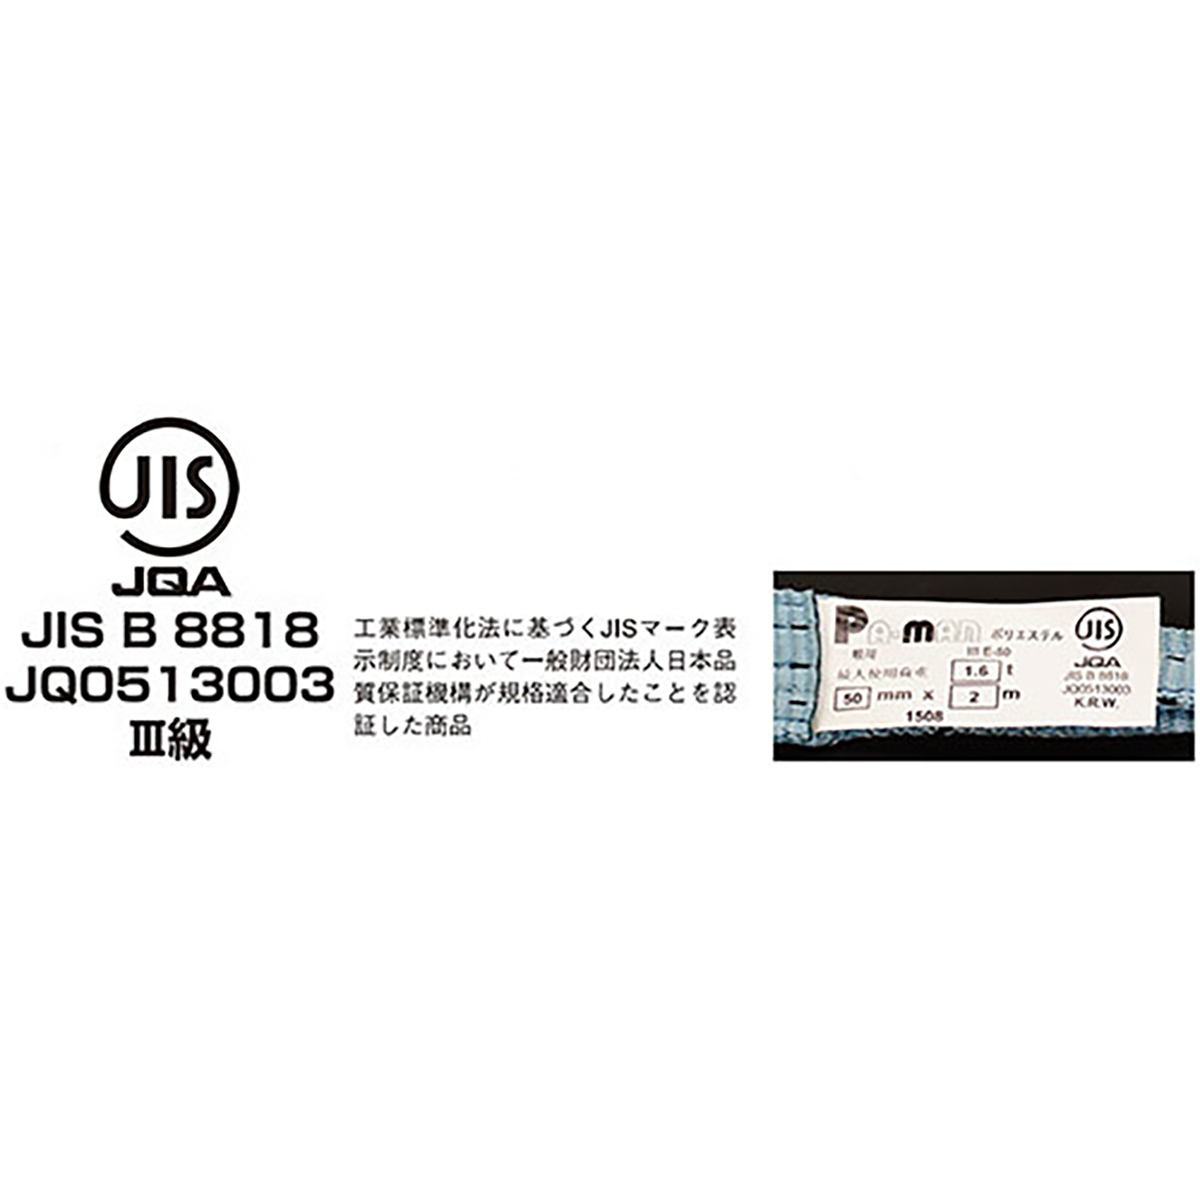 ポリベルトスリング JIS III級 ソフト面付 巾25mm 1.5m 1本